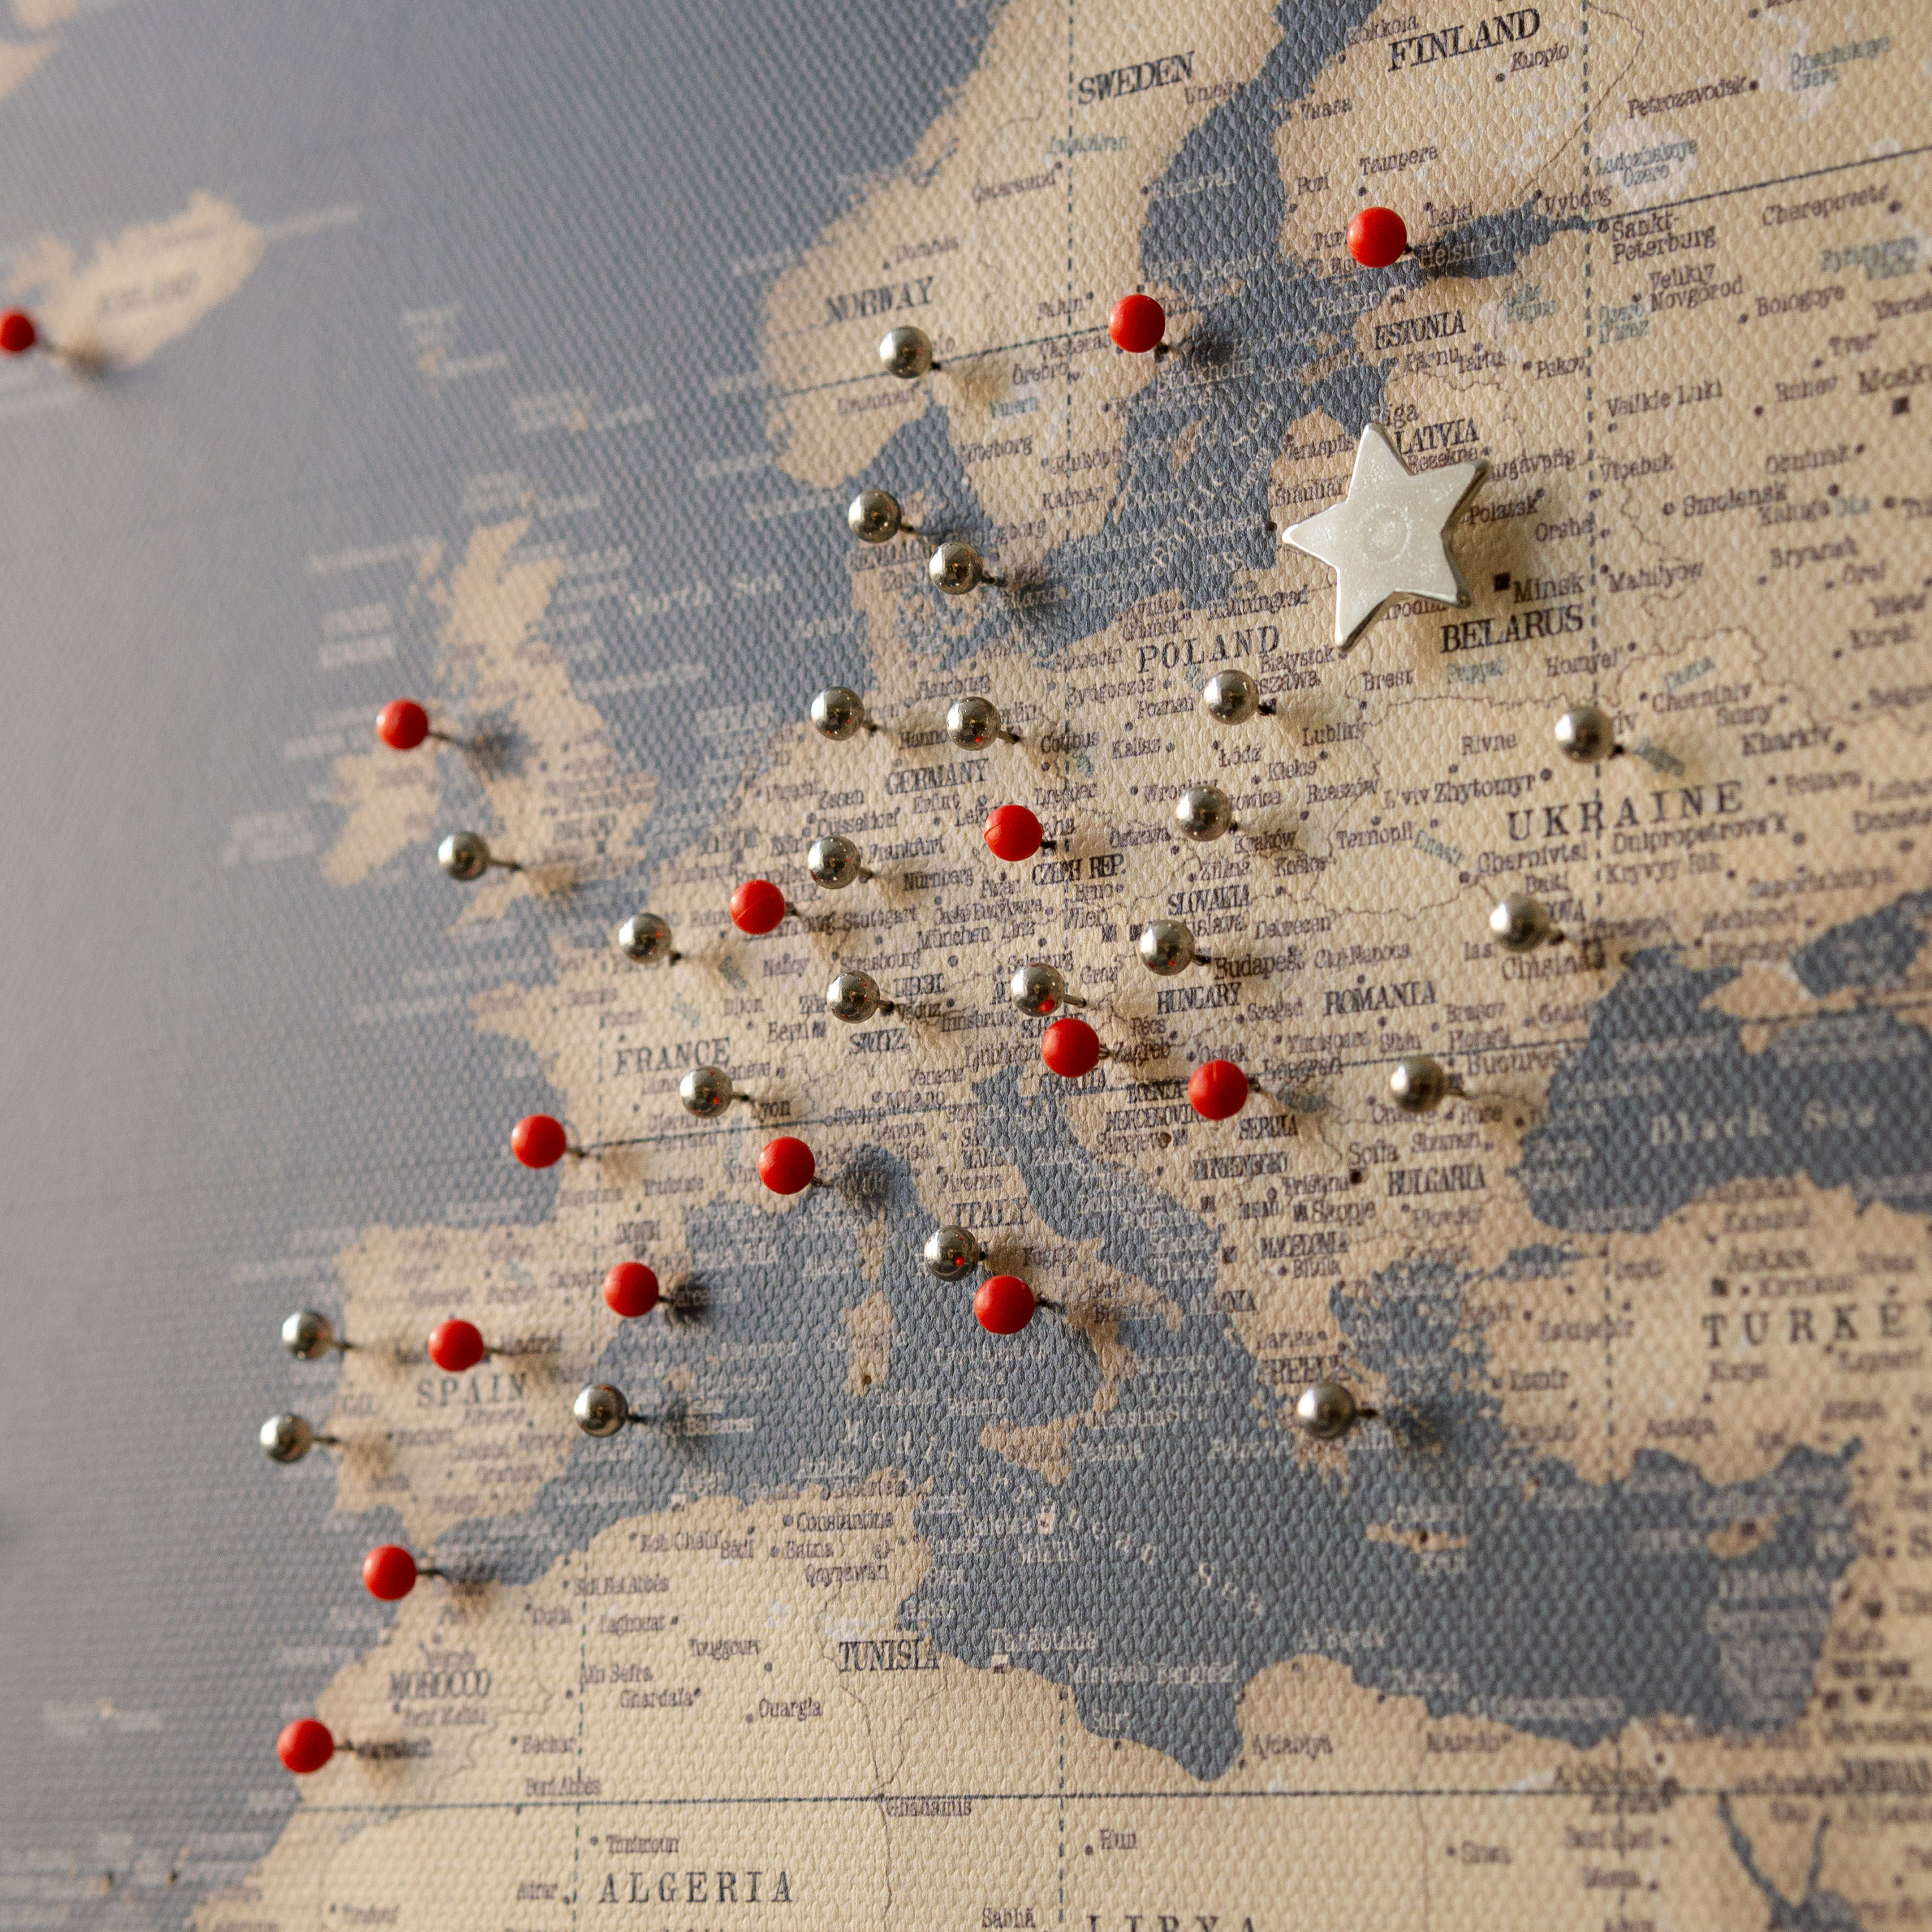 Punaise carte du monde détaillé Carte du monde personnalisable à épingler  Toile mappemonde liege Décoration murale Planisphère mural -  France